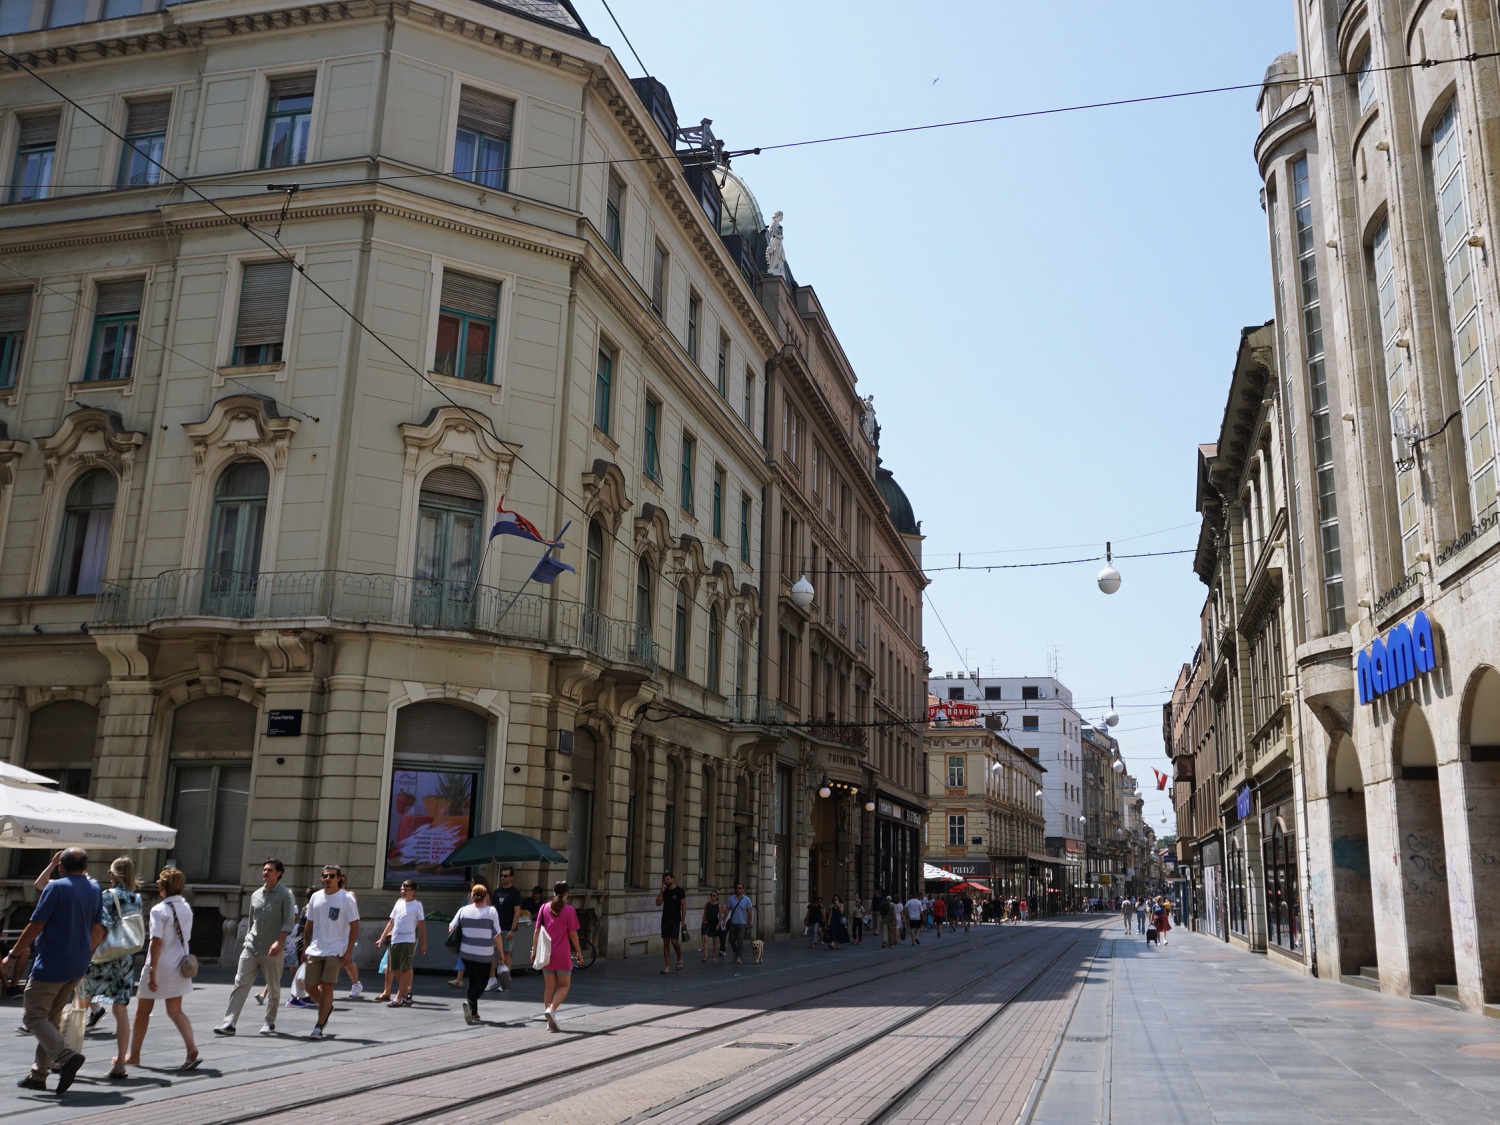 Zagreb